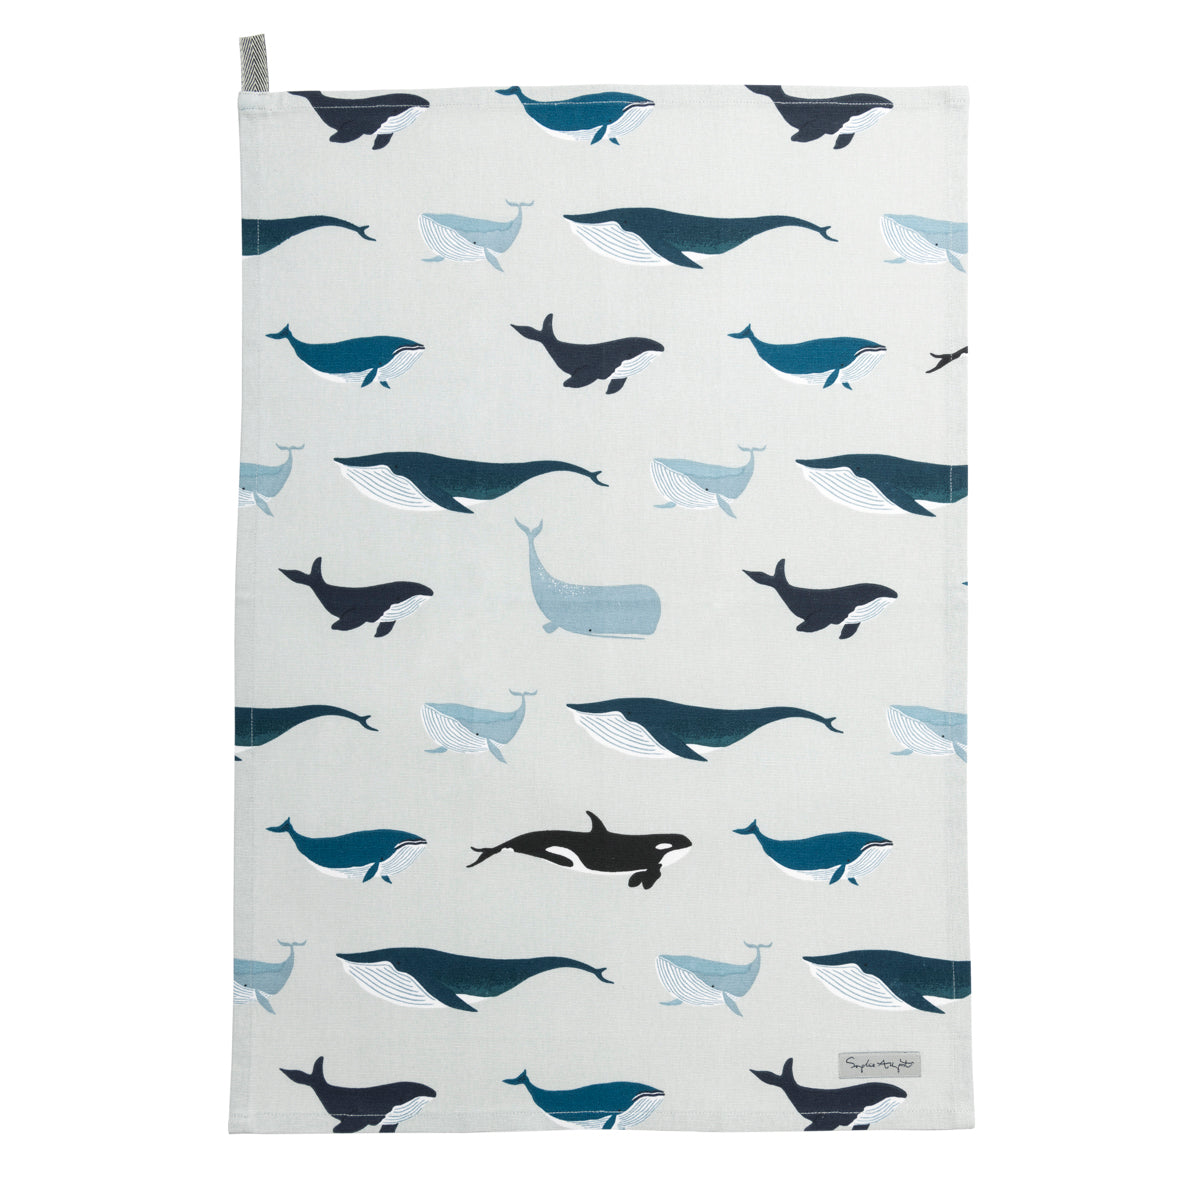 Whales Cotton Tea Towel by Sophie Allport 